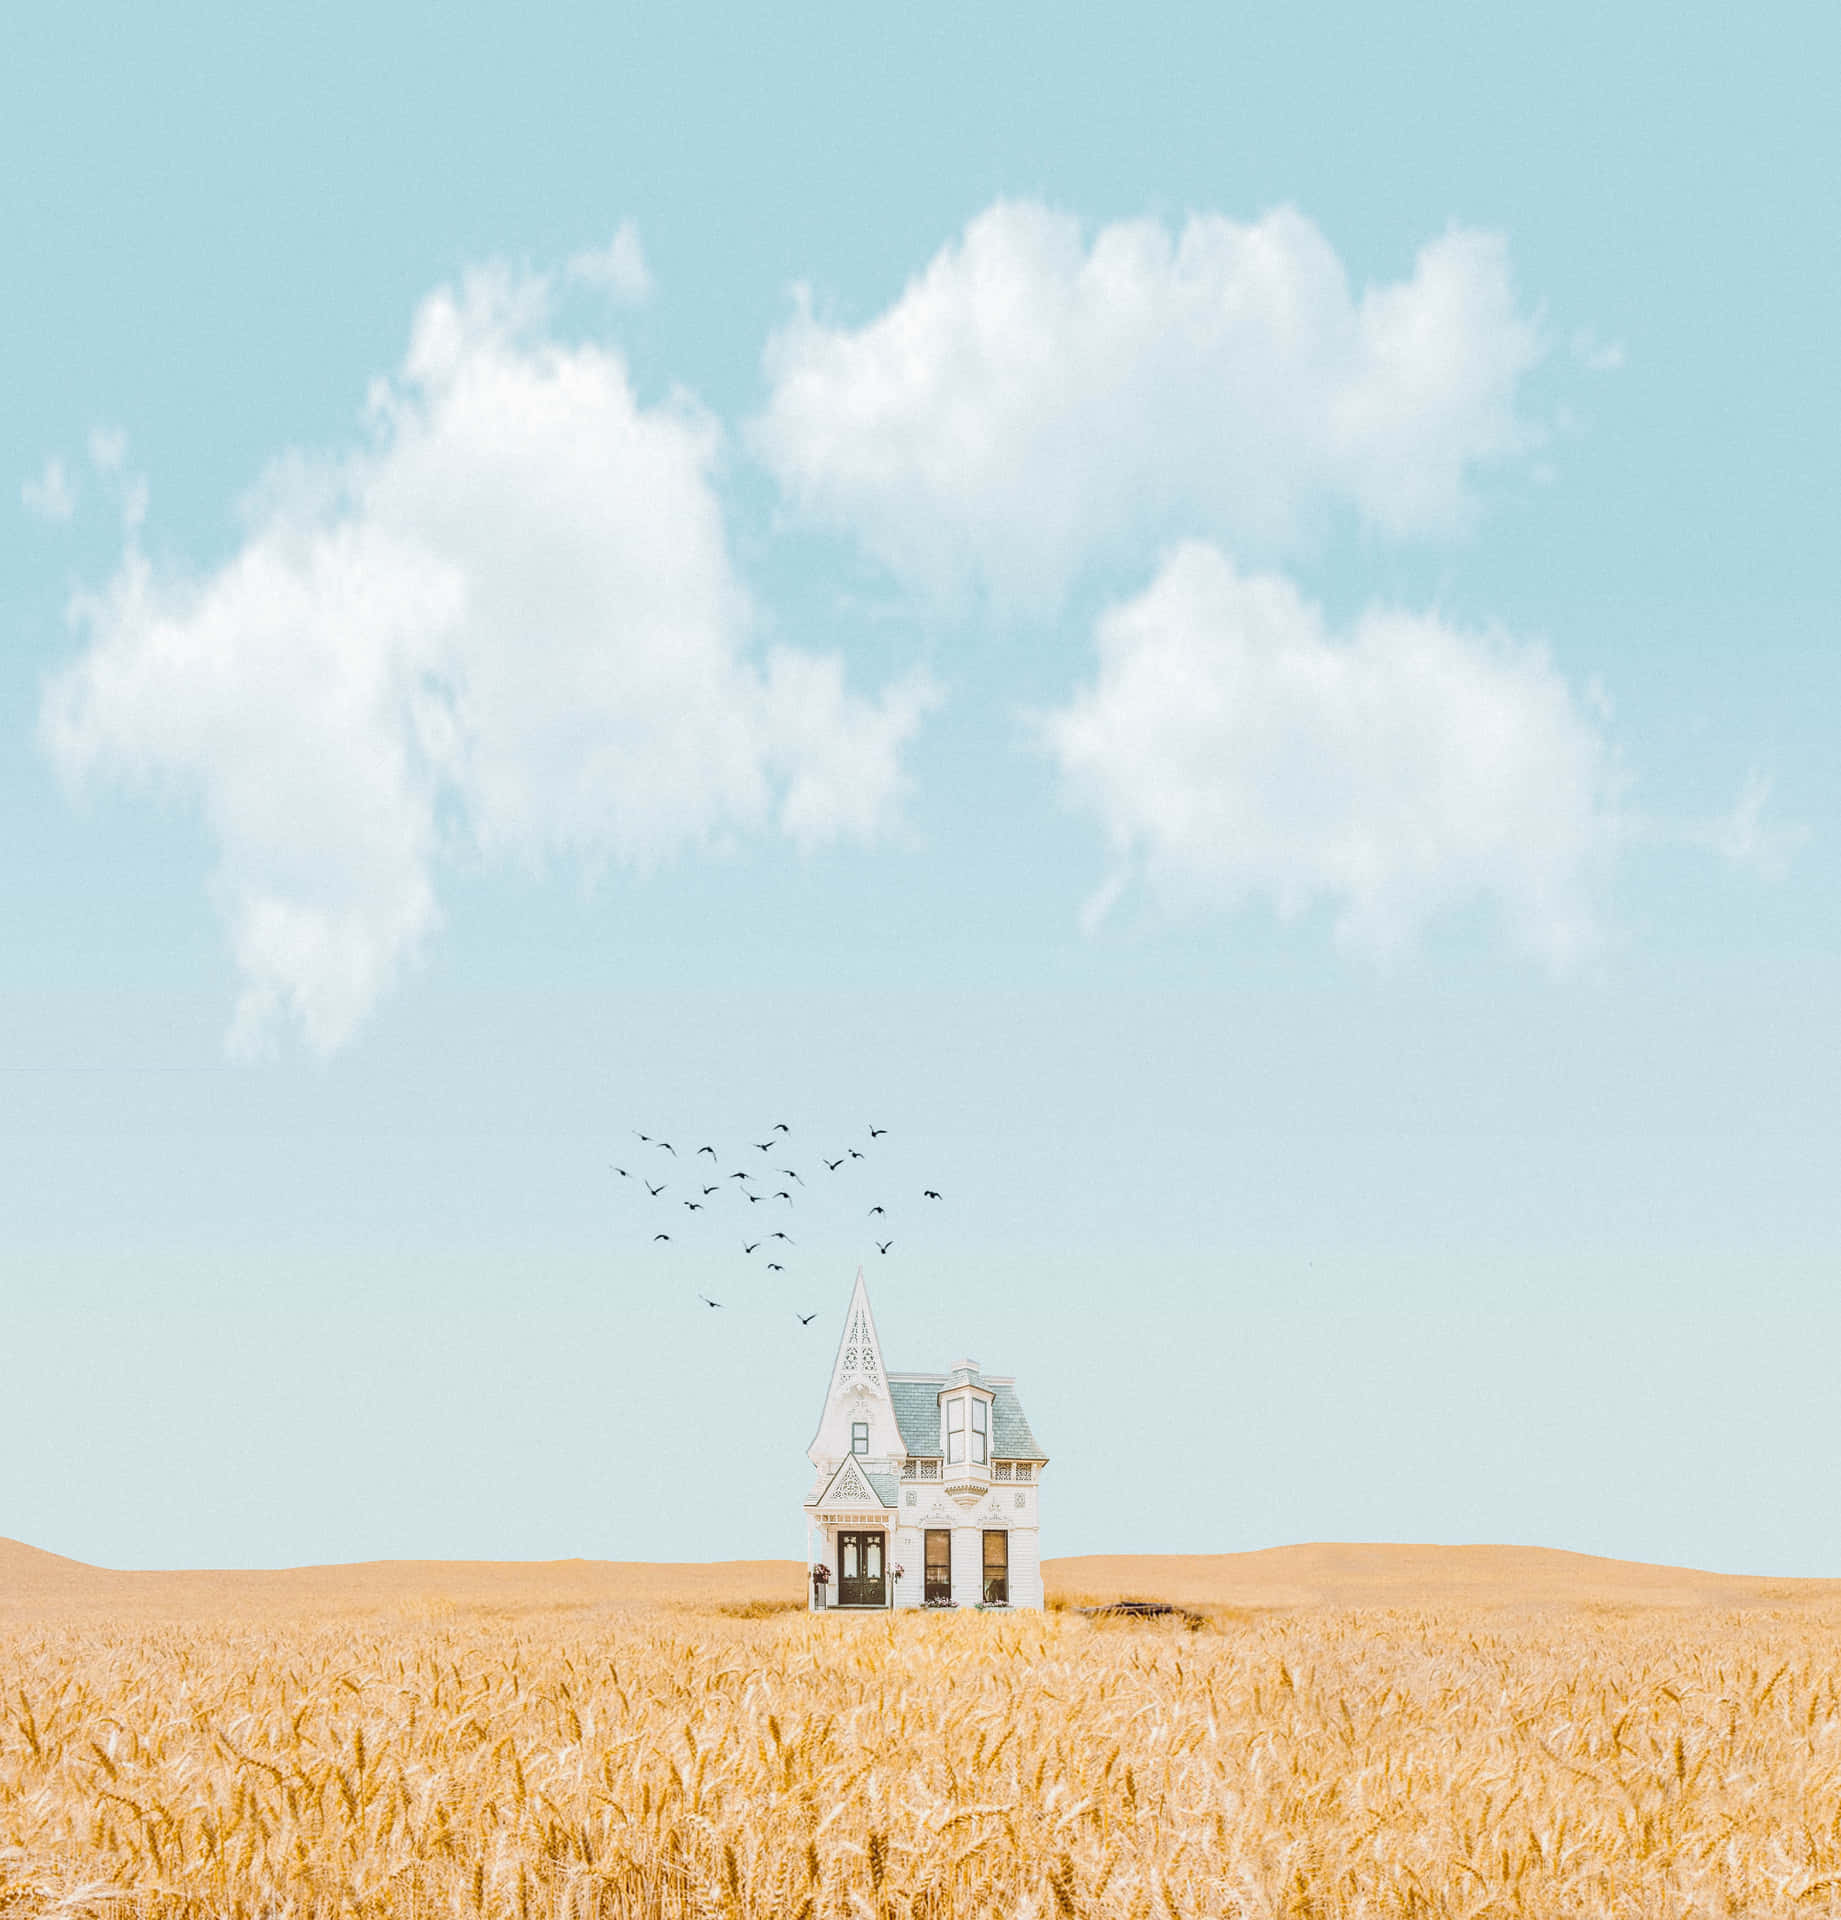 Besteshintergrundbild Für Ein Minimalistisches Haus Im Feld